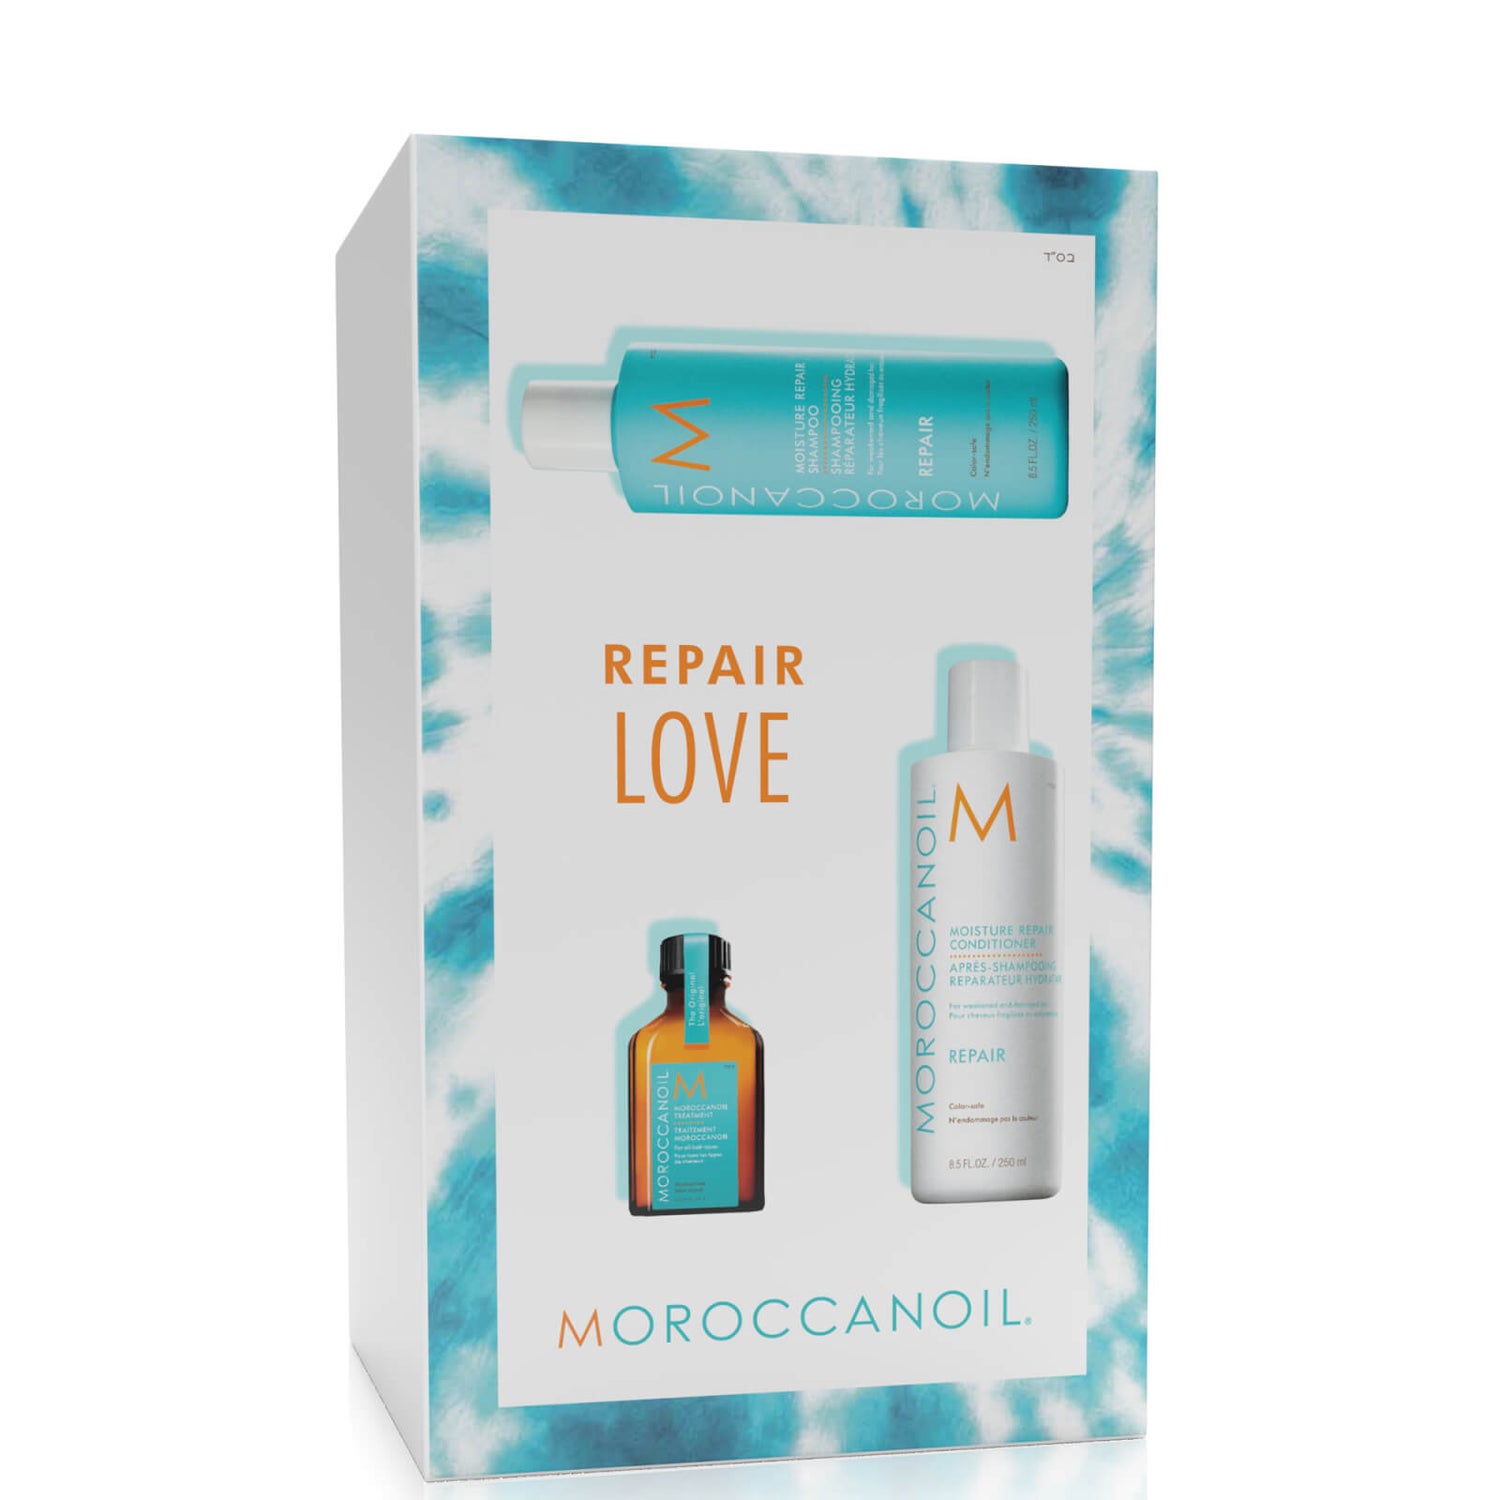 Moroccanoil Repair Shampoo & Conditioner Set (worth £49.55)